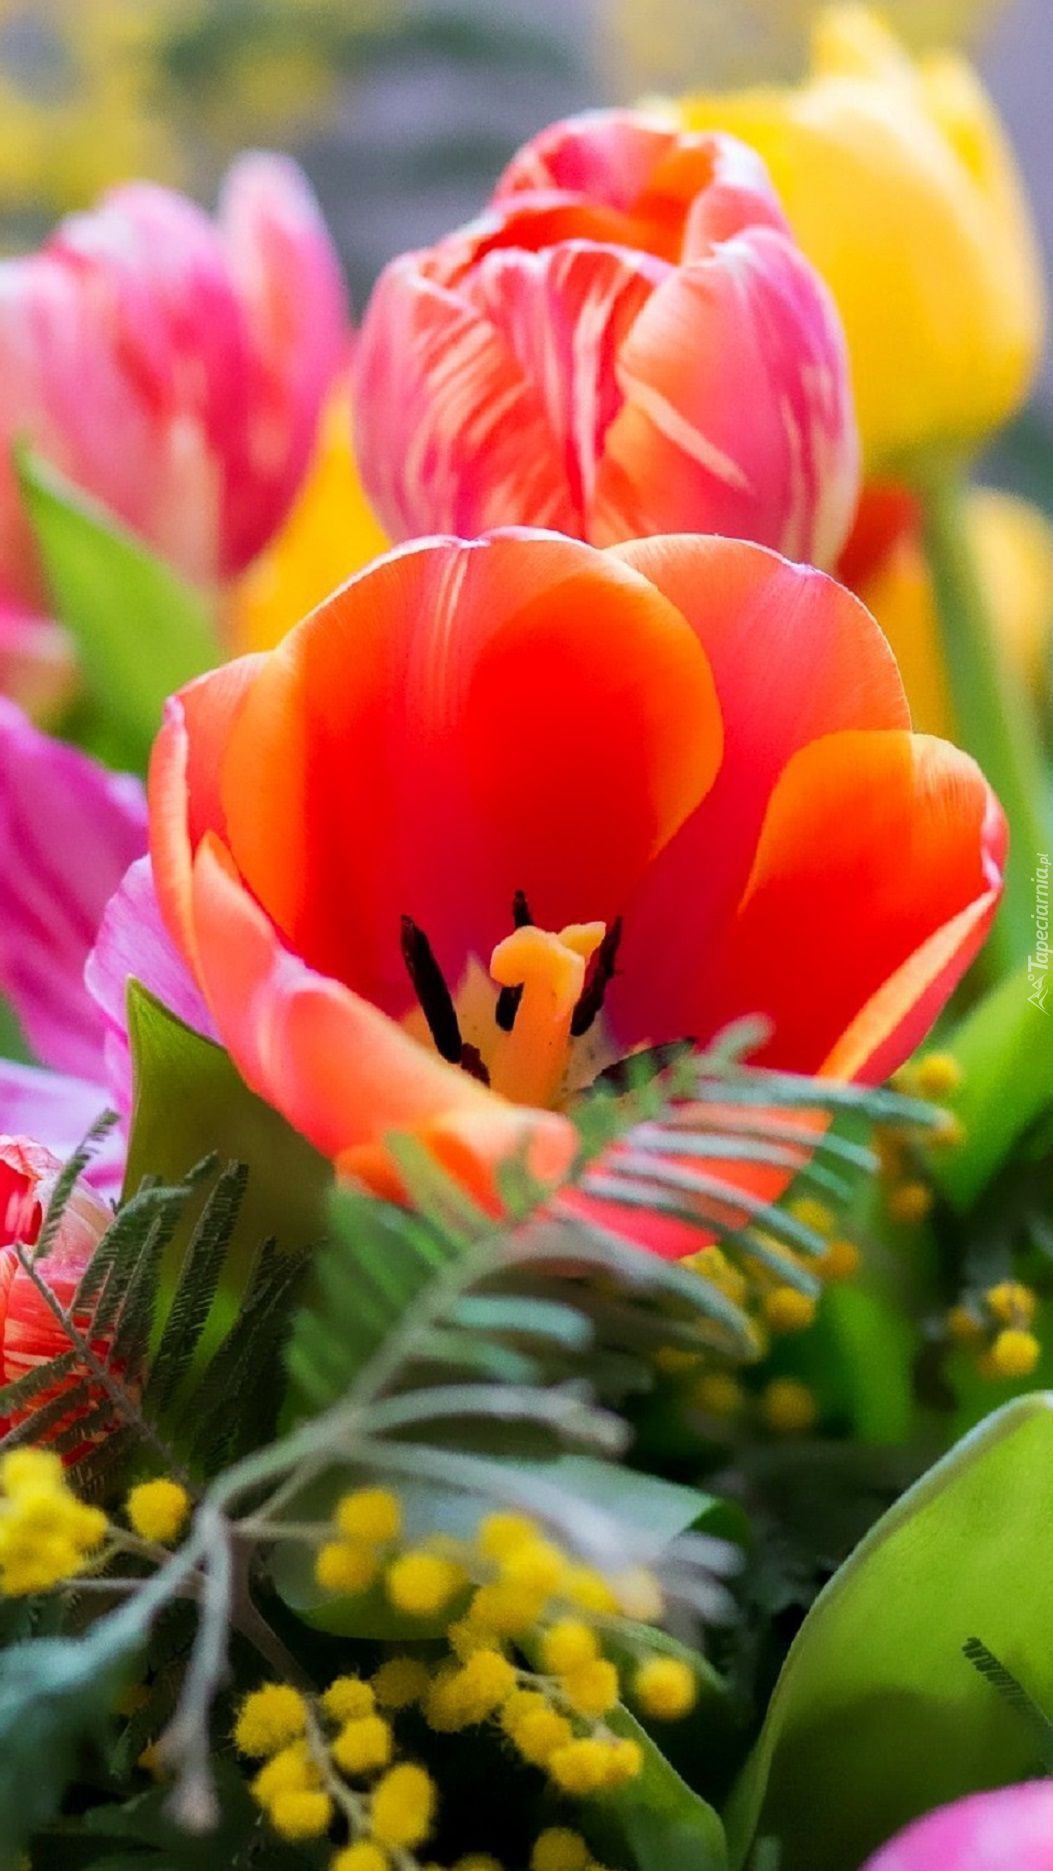 Bukiet kolorowych tulipanów